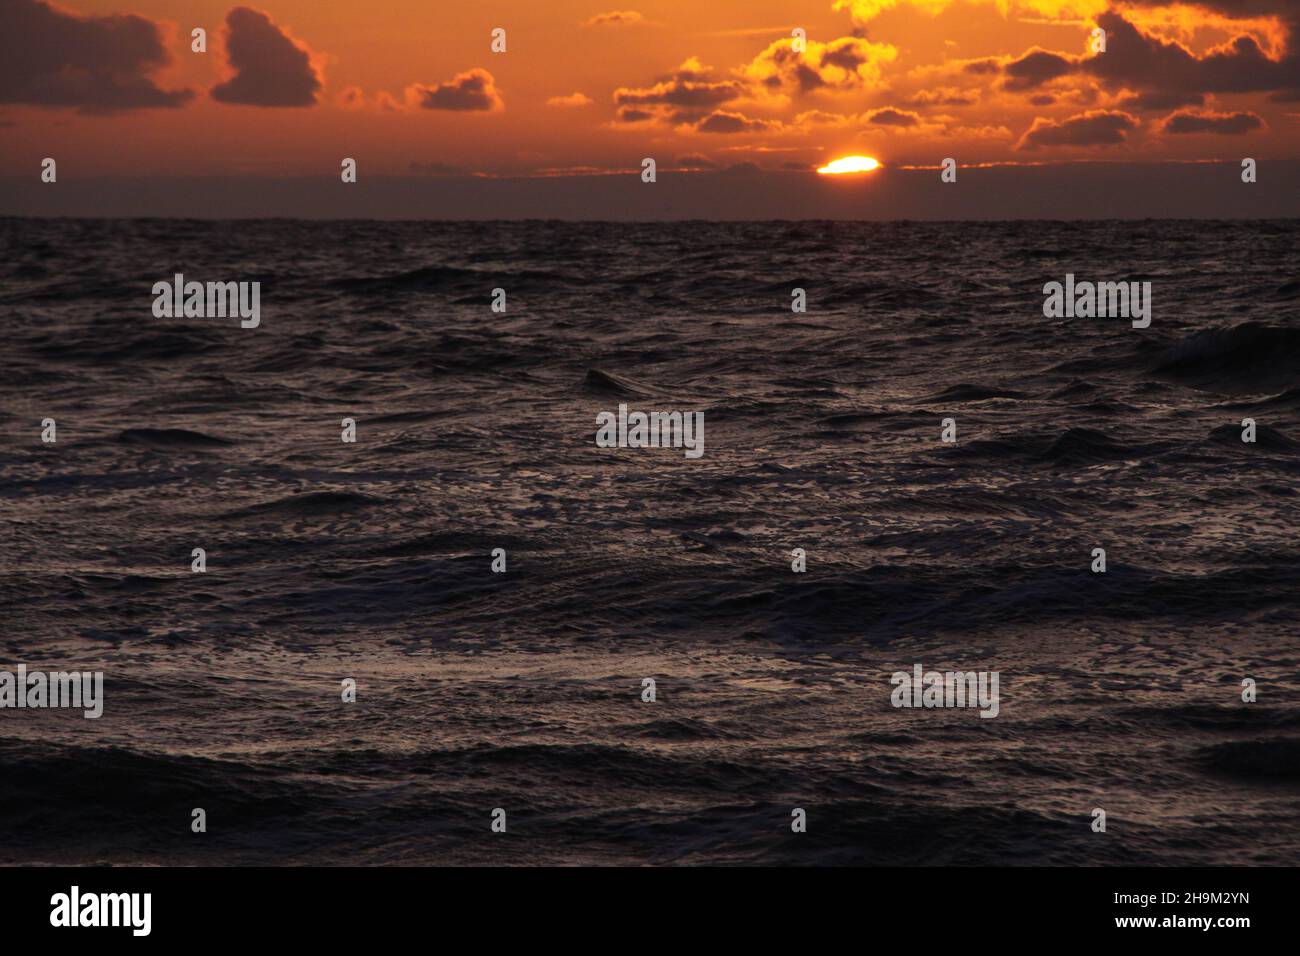 Das Muster der Wellen im Meer während des Sonnenuntergangs am Strand. Goldene Stunde. Stockfoto